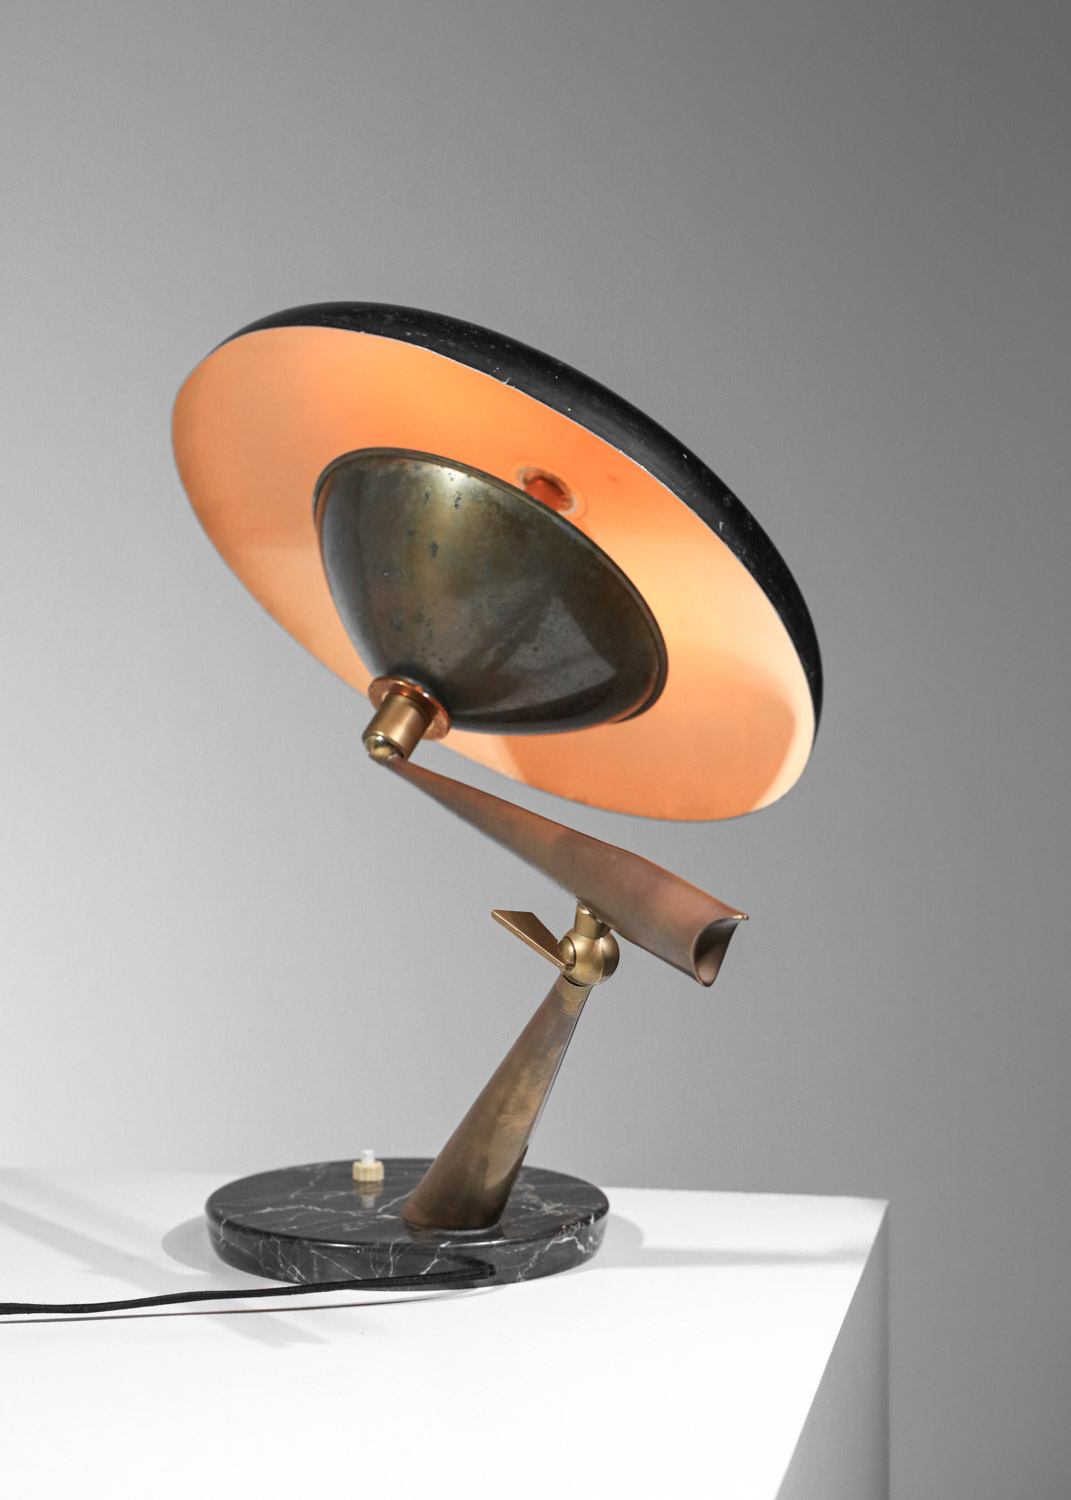 Lampe de table italienne années 50 attr. à Lumen laquée noire et laiton socle en marbre Années 60 style arredoluce stillux H130